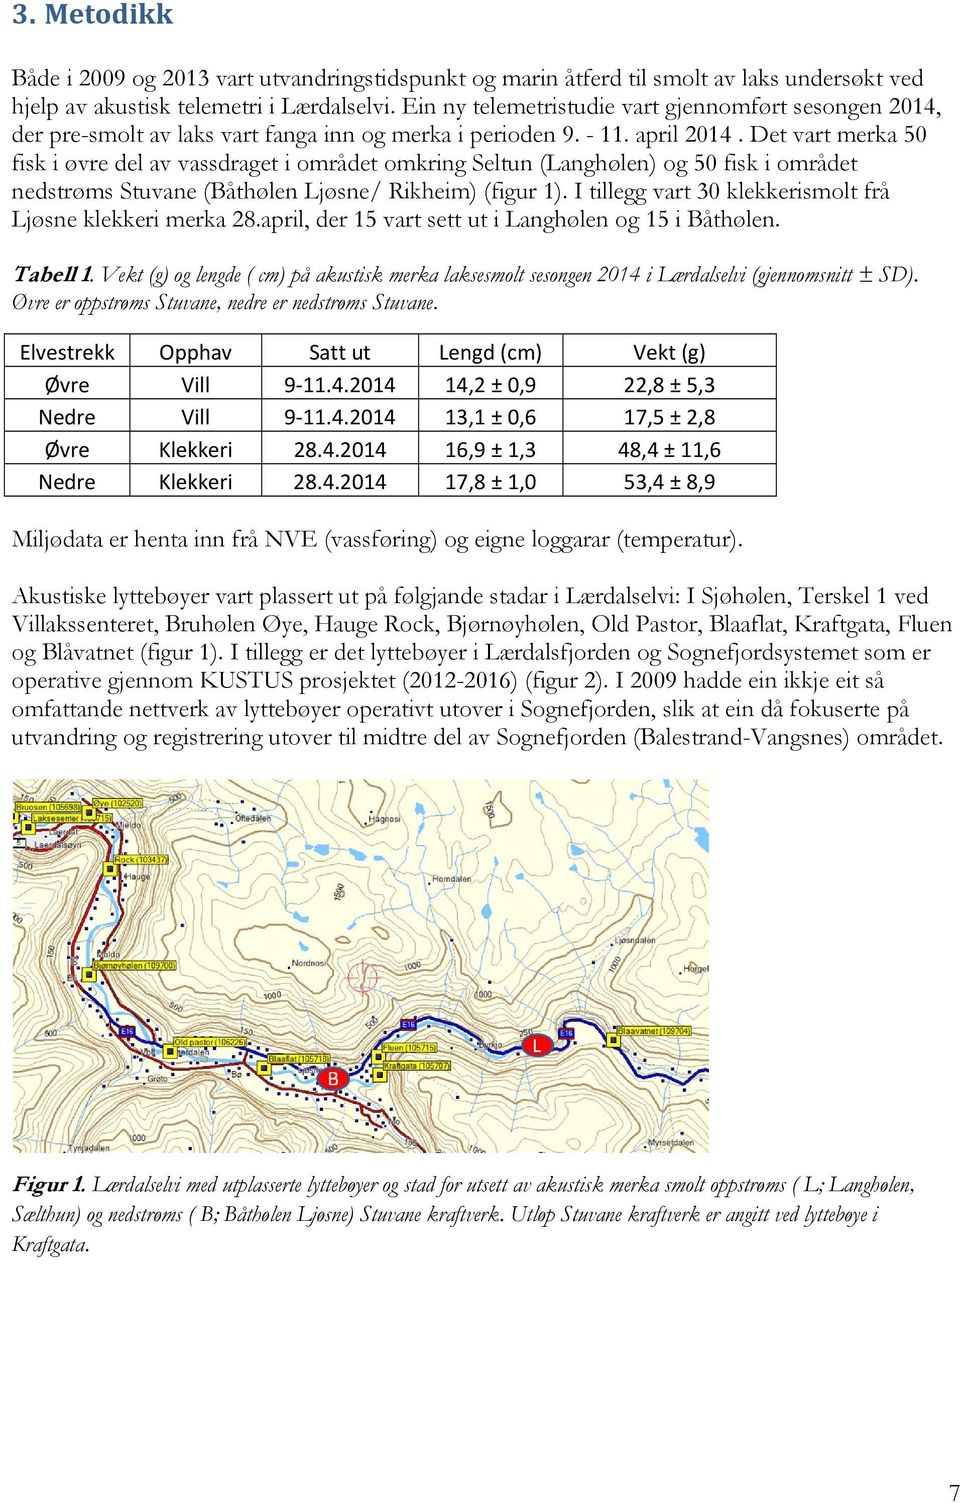 Det vart merka 50 fisk i øvre del av vassdraget i området omkring Seltun (Langhølen) og 50 fisk i området nedstrøms Stuvane (Båthølen Ljøsne/ Rikheim) (figur 1).